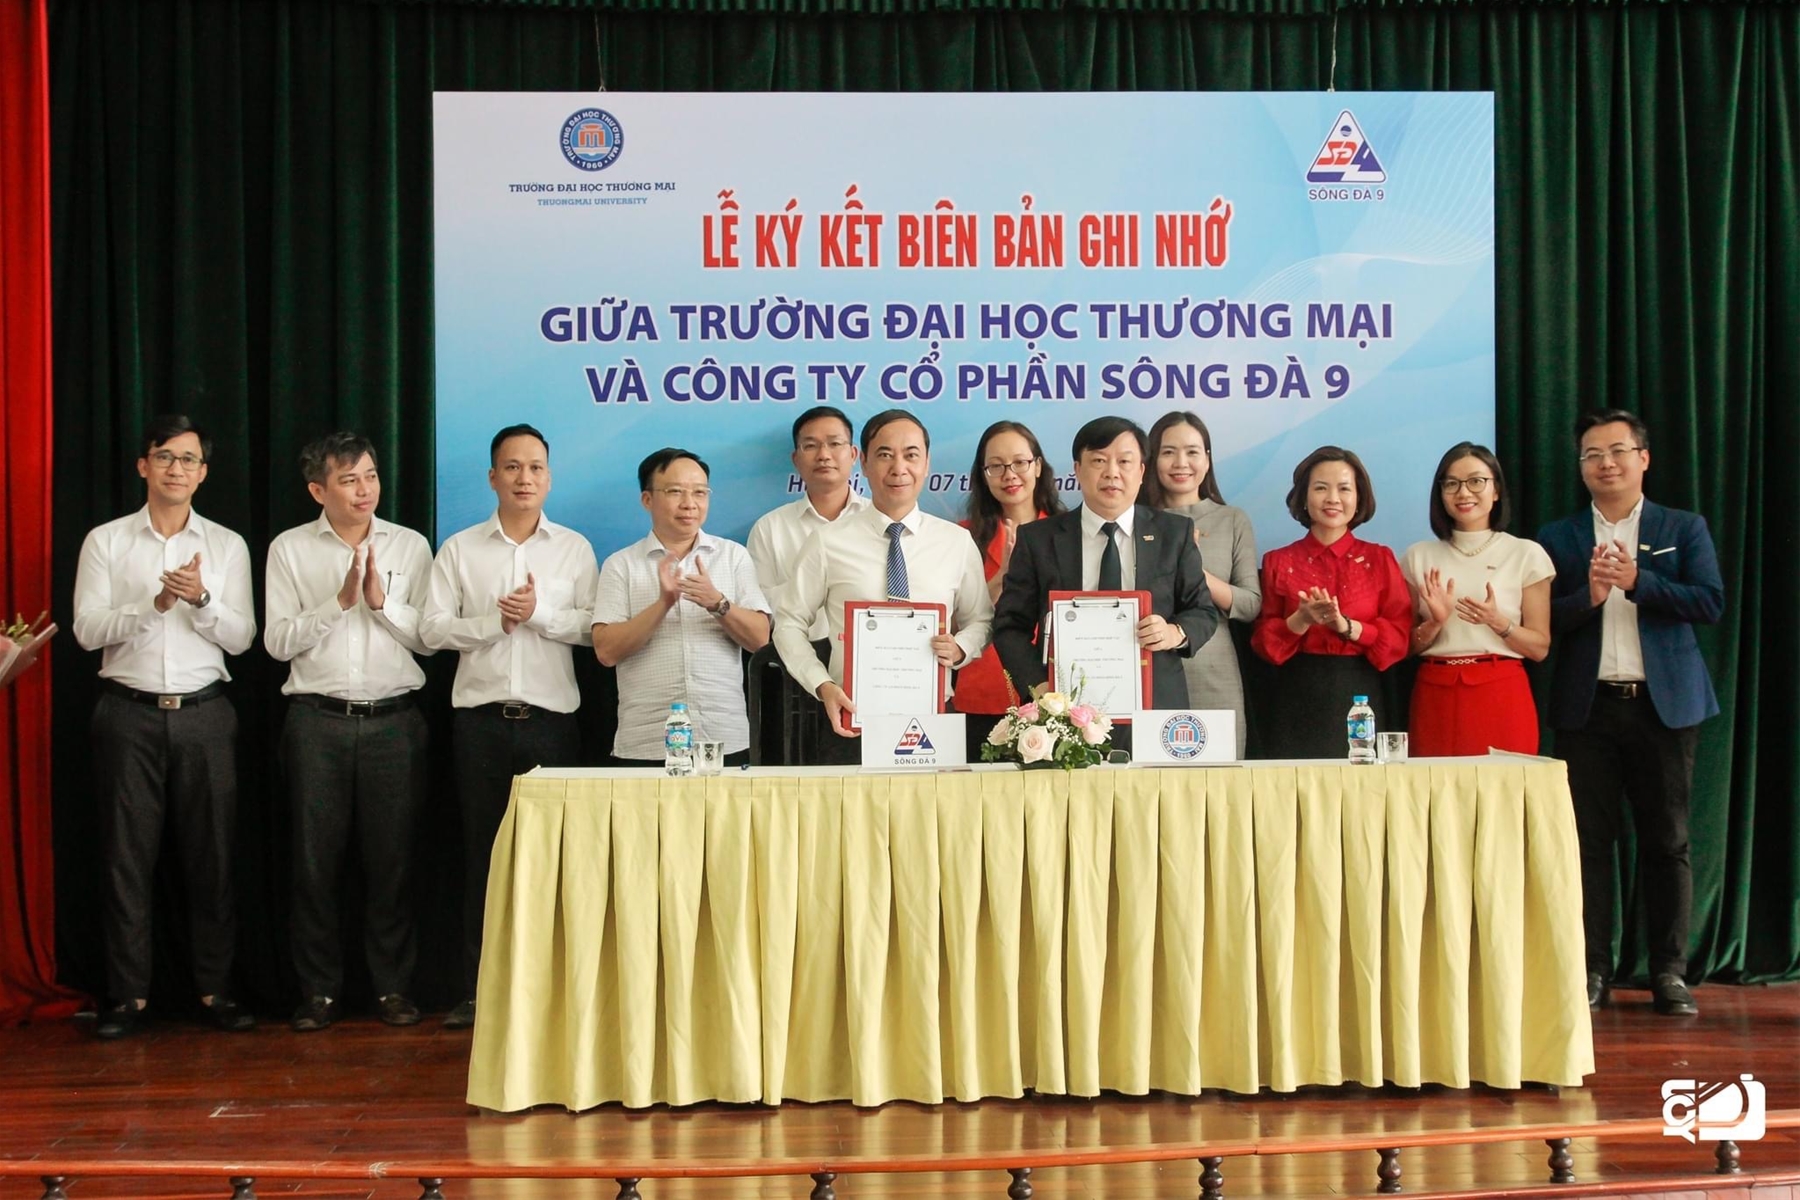 Lễ ký kết Biên bản ghi nhớ hợp tác giữa Trường Đại học Thương Mại và Công ty cổ phần Sông Đà 9